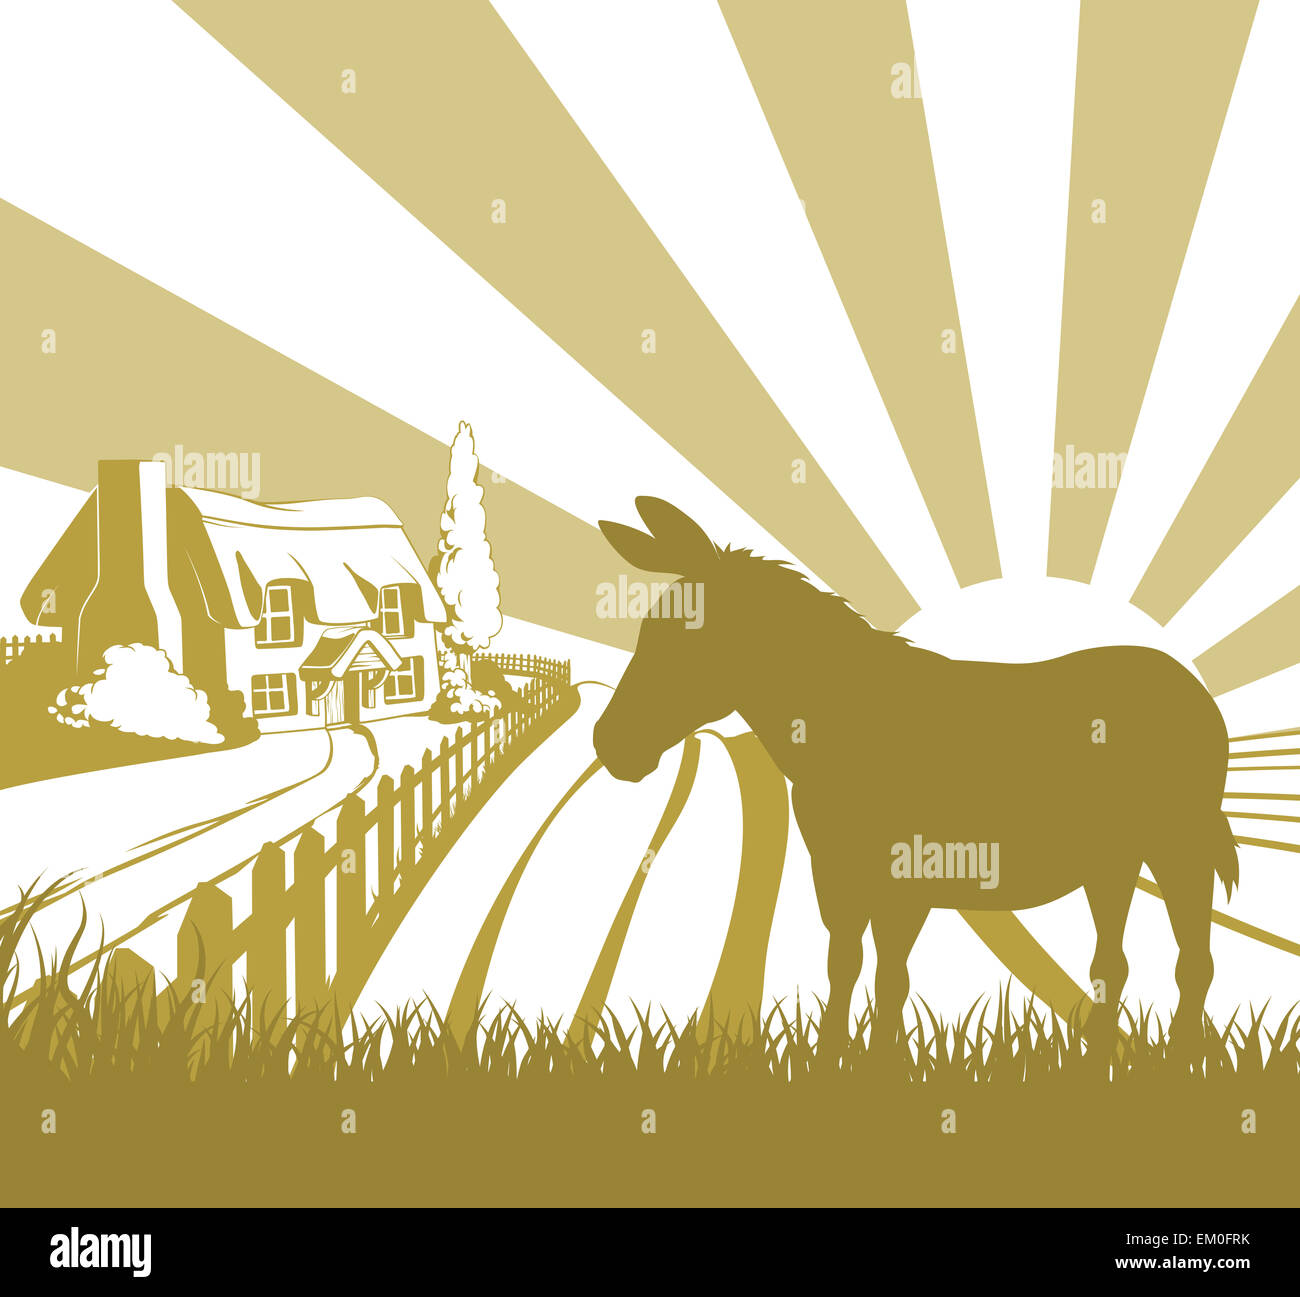 Une illustration d'une maison de ferme chaumière dans un paysage idyllique de collines avec un âne en silhouette debout je Banque D'Images